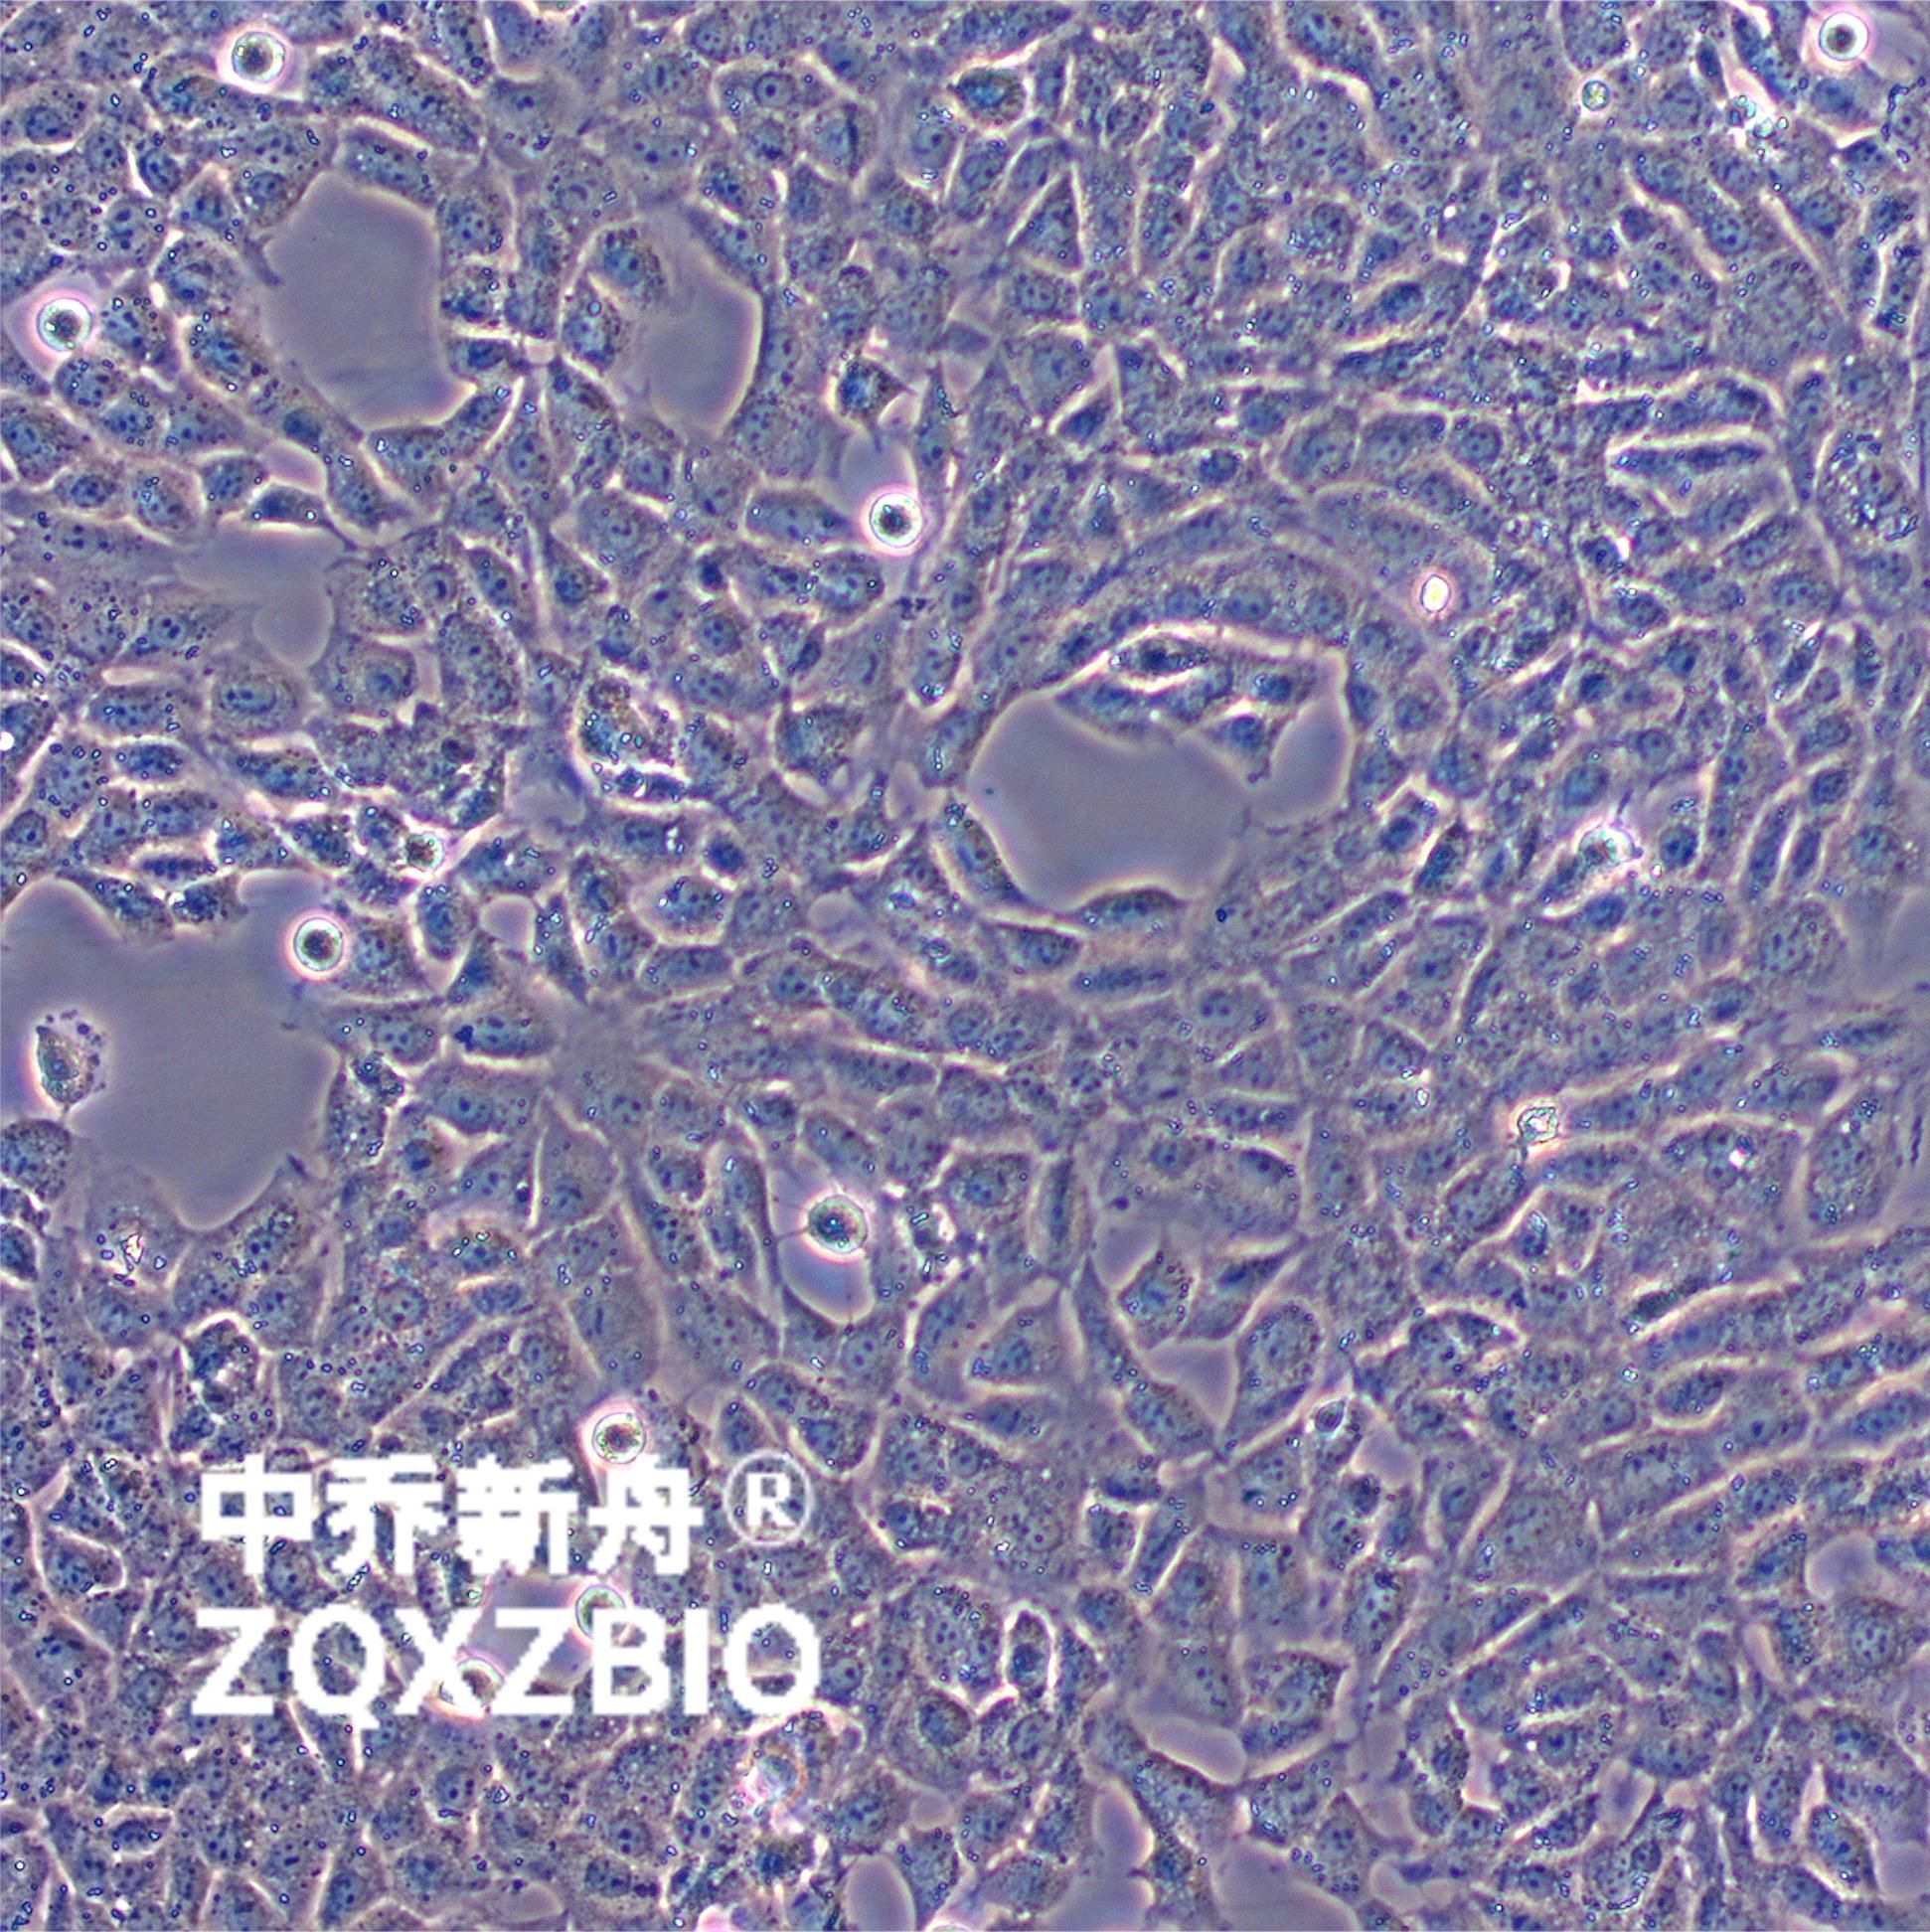 TM3小鼠睾丸间质细胞